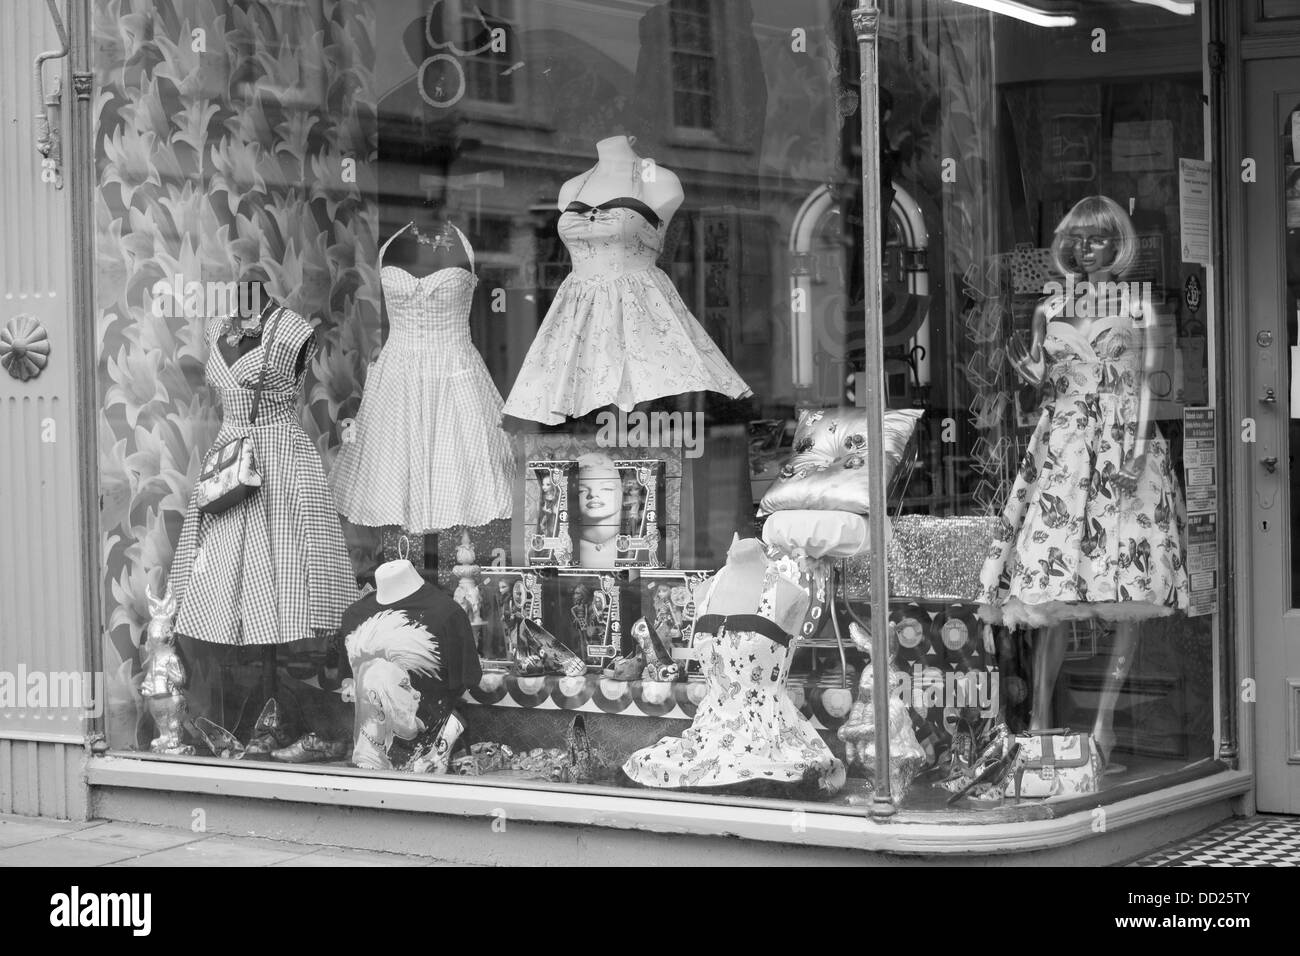 Una fotografía en blanco y negro de una ventana de la tienda retro Foto de stock